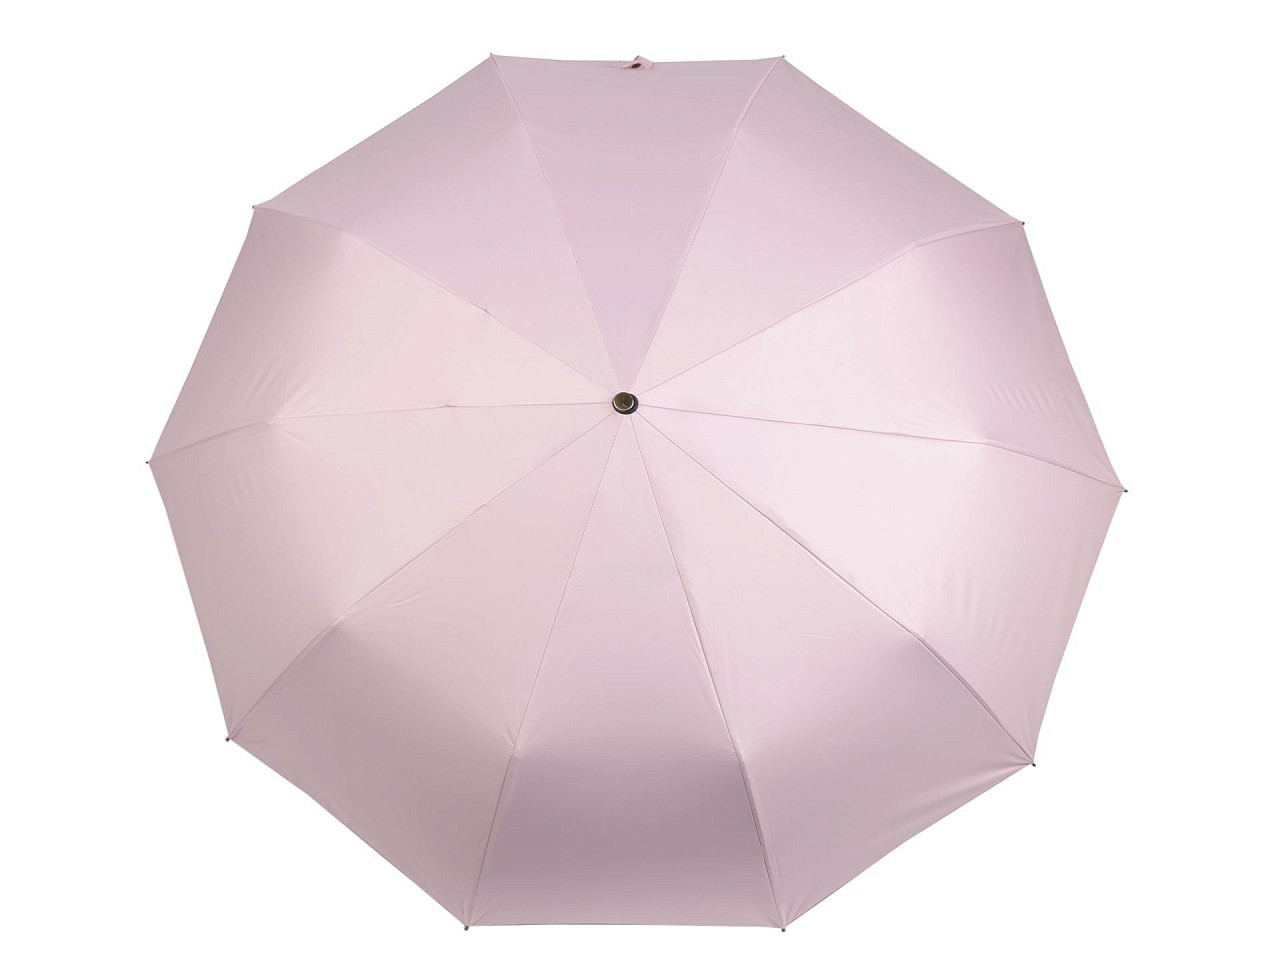 Velký skládací vystřelovací deštník, barva 1 růžová nejsv.